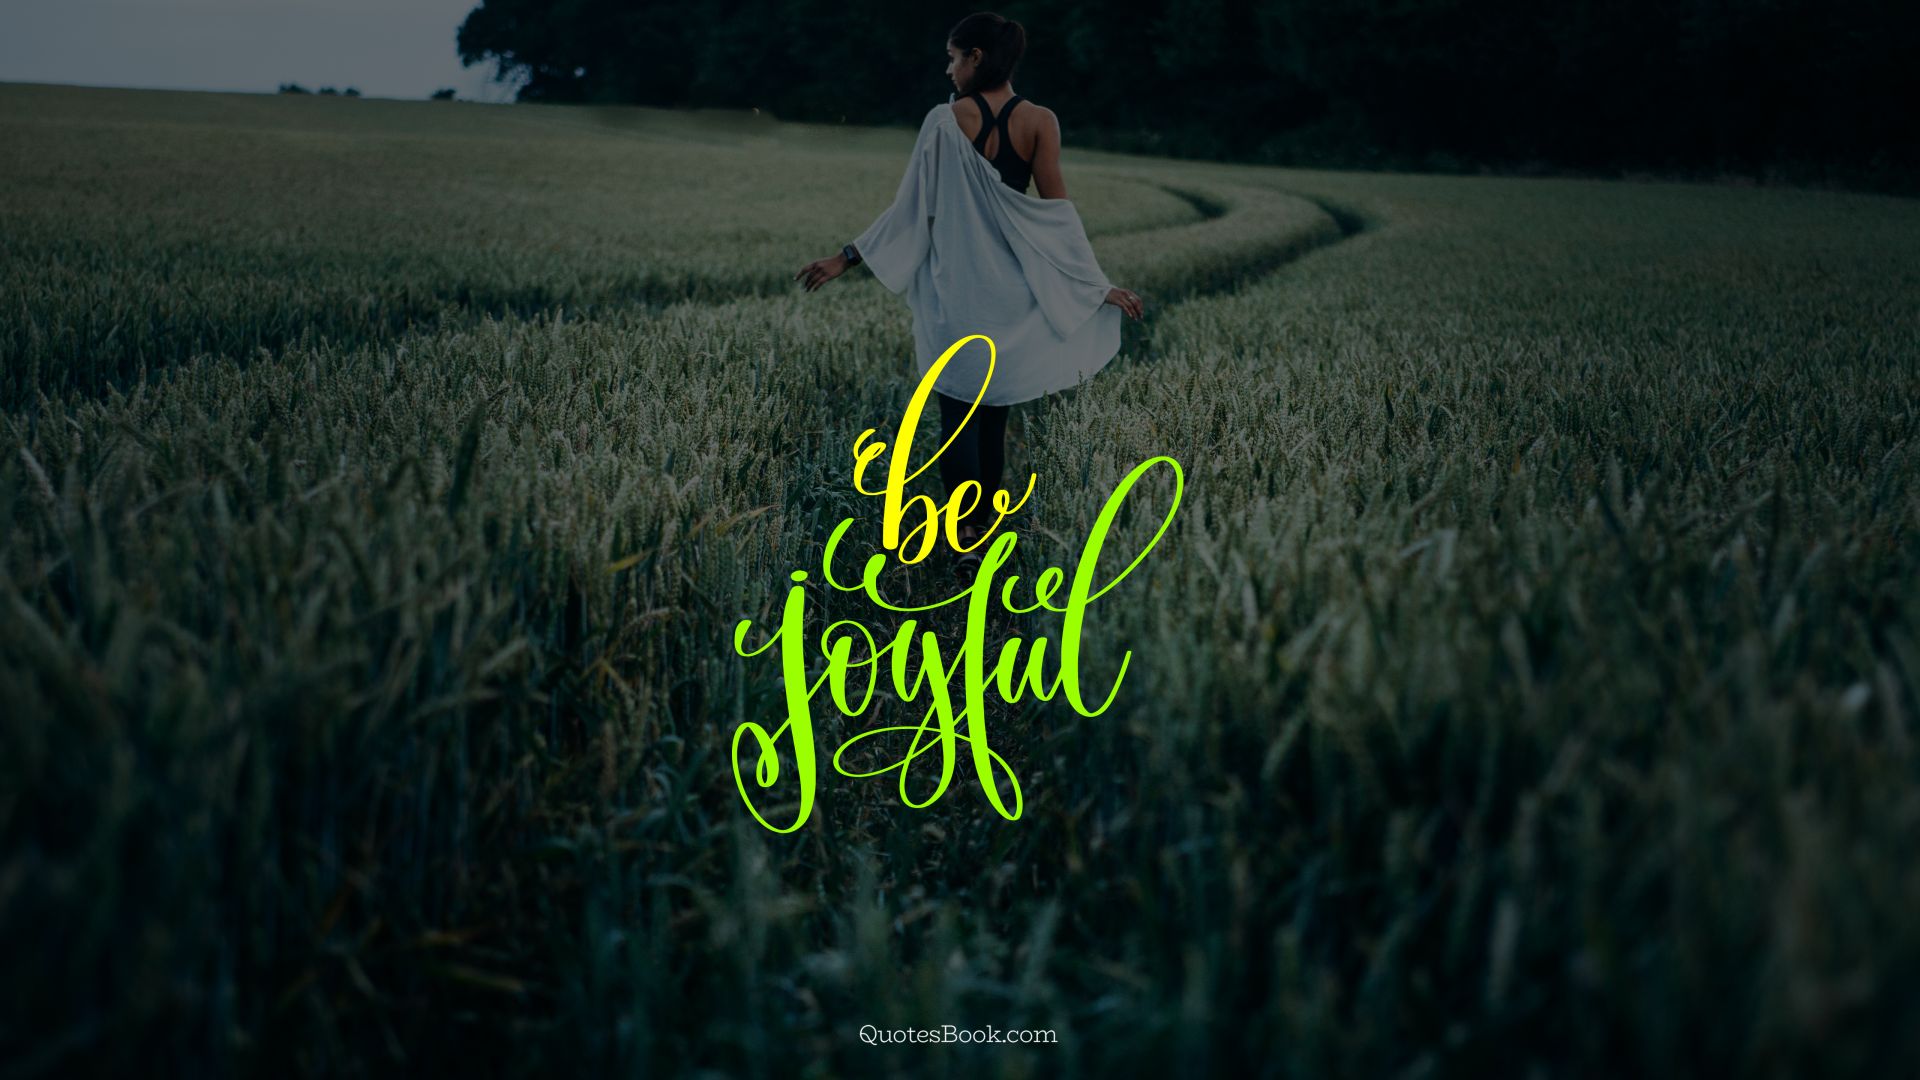 Be joyful